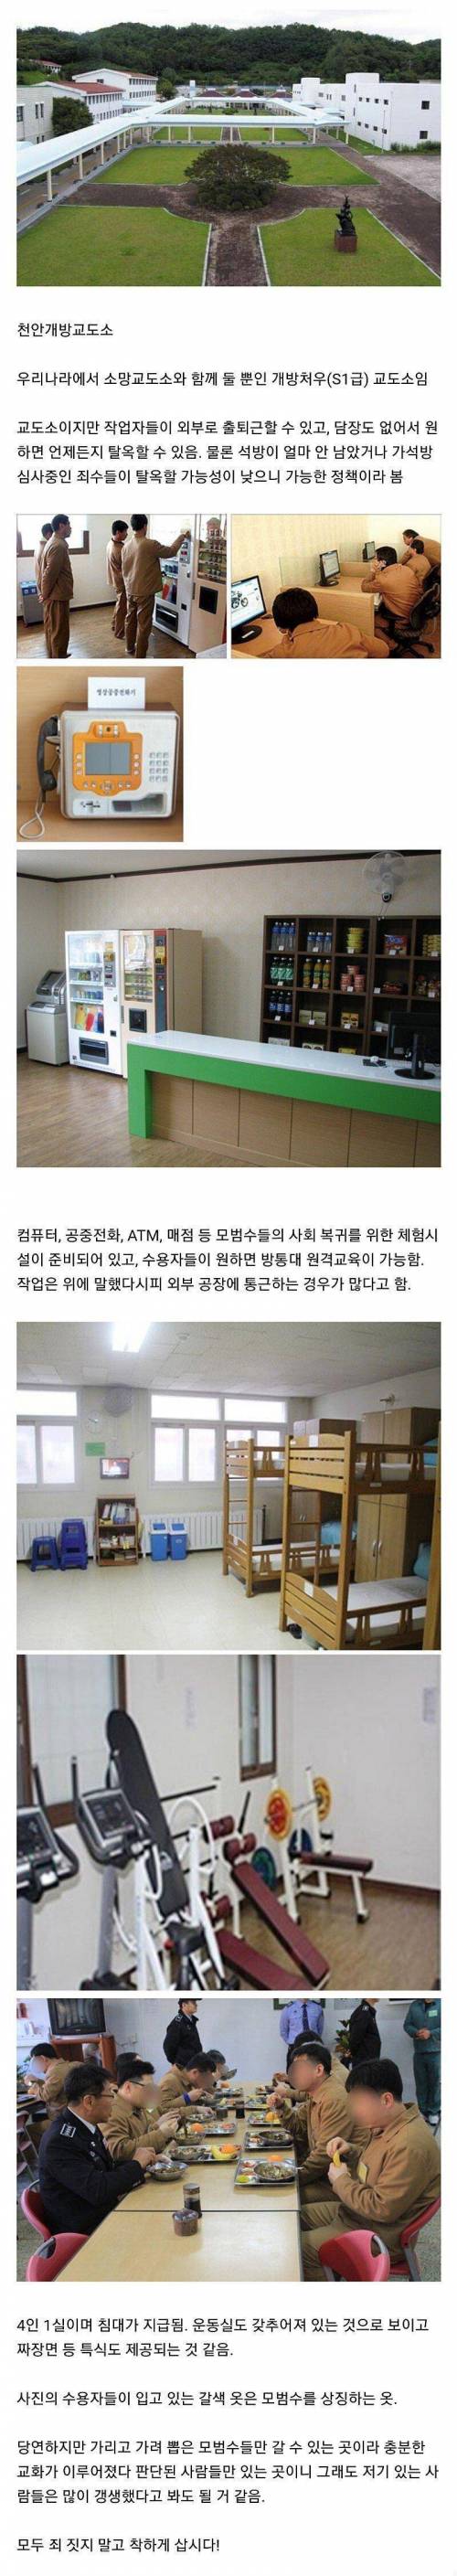 13 한국의 개방 교도소.jpg